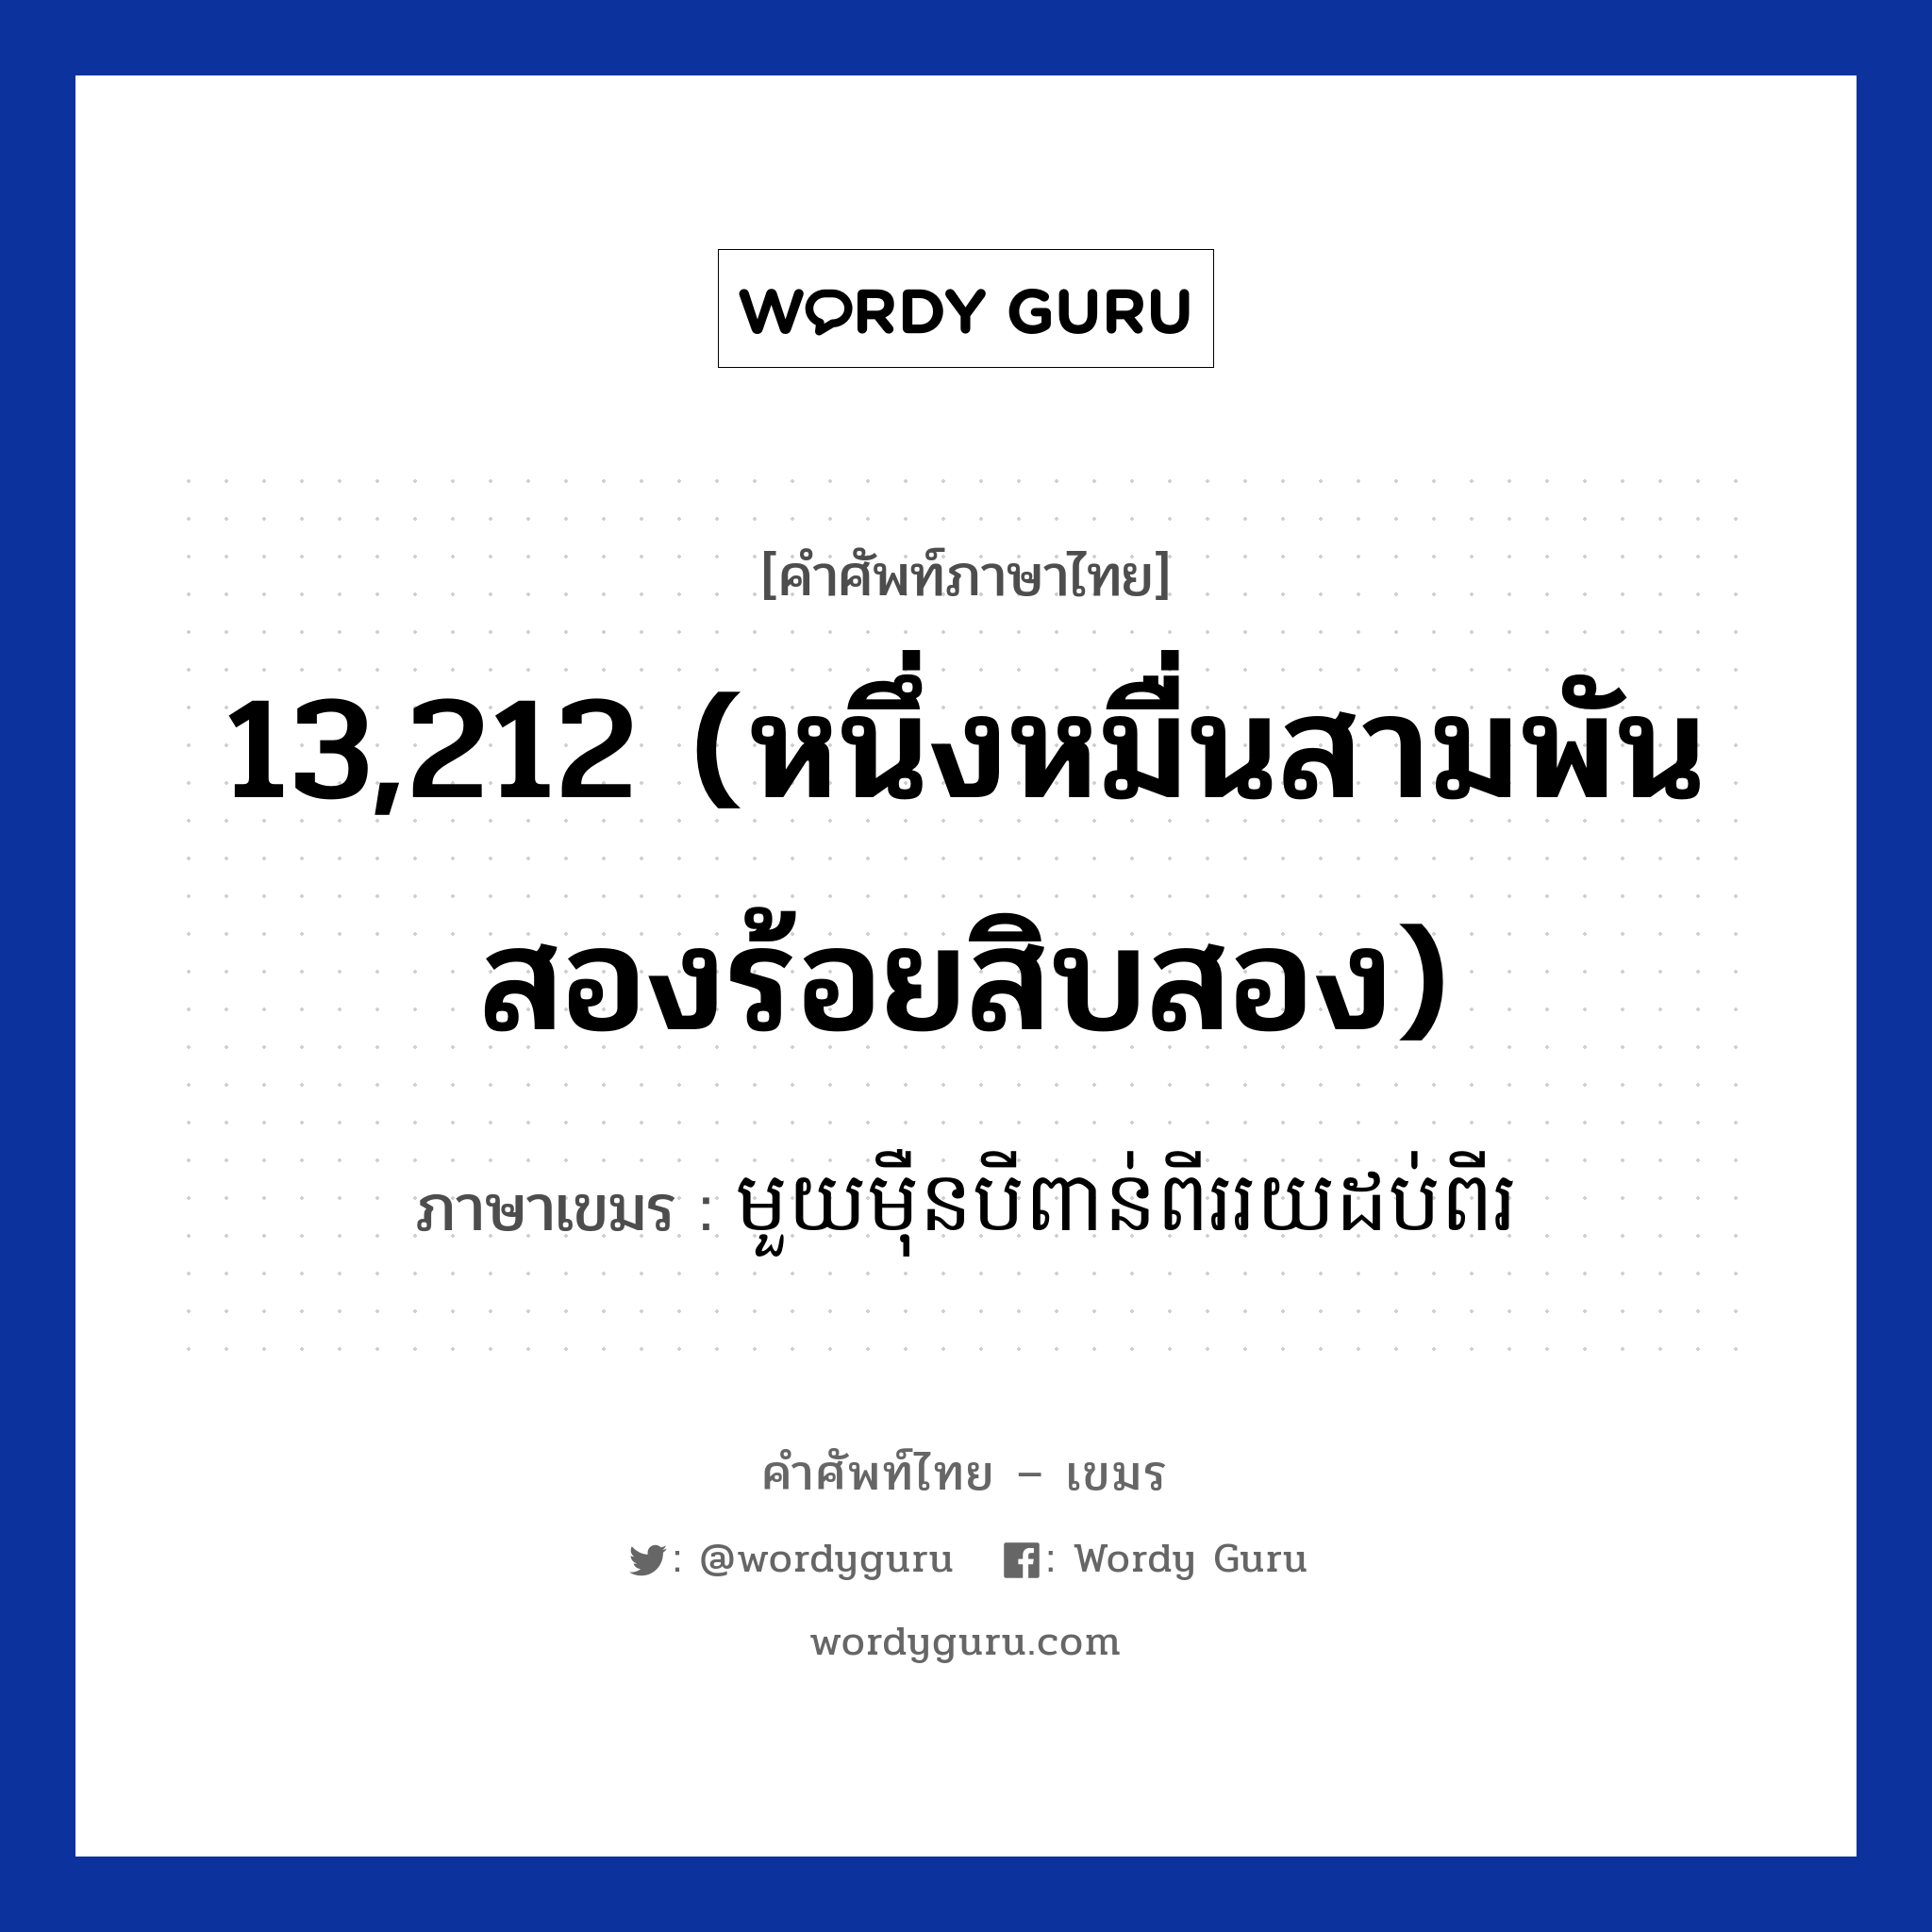 មួយមឺុនបីពាន់ពីររយដប់ពីរ ภาษาไทย?, คำศัพท์ภาษาไทย - เขมร មួយមឺុនបីពាន់ពីររយដប់ពីរ ภาษาเขมร 13,212 (หนึ่งหมื่นสามพันสองร้อยสิบสอง) หมวด การนับเลข Mouymoeunbeibounpiiroydobpii หมวด การนับเลข